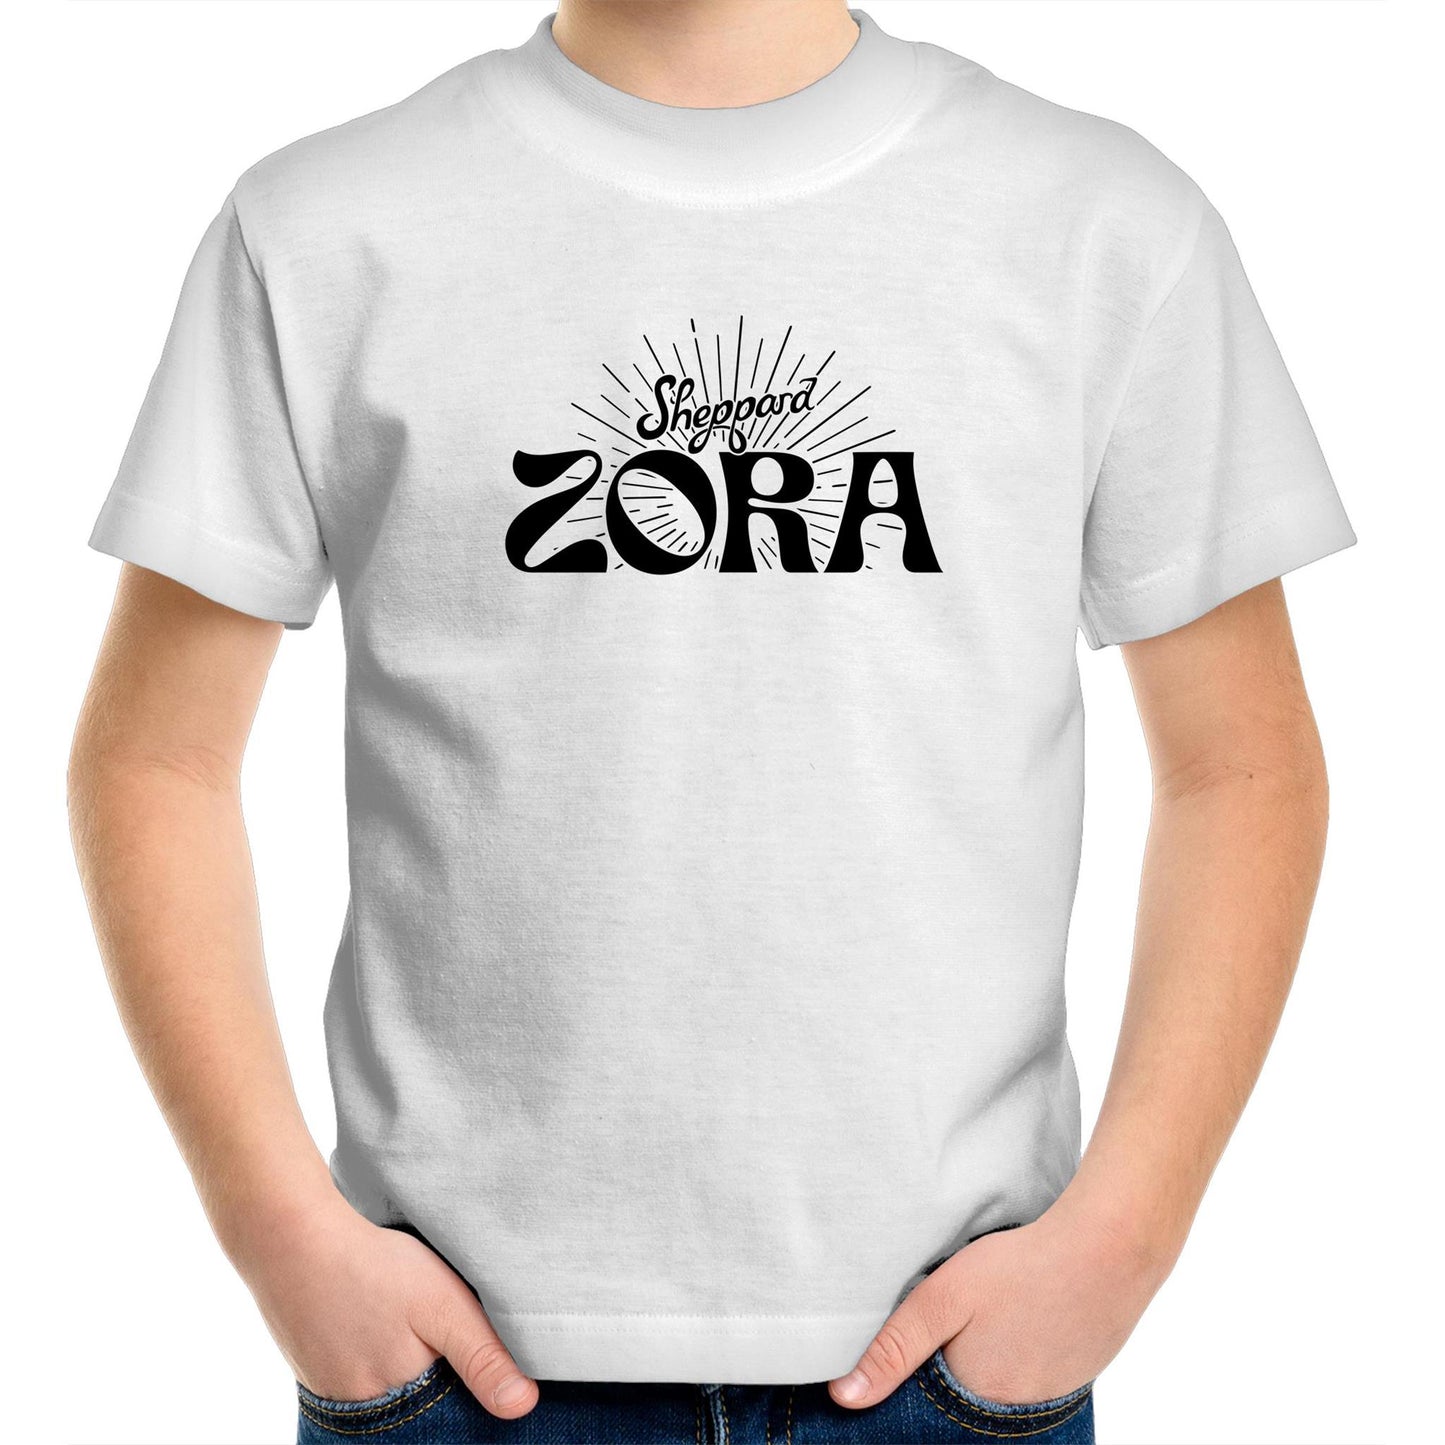 Zora Kids T-Shirt